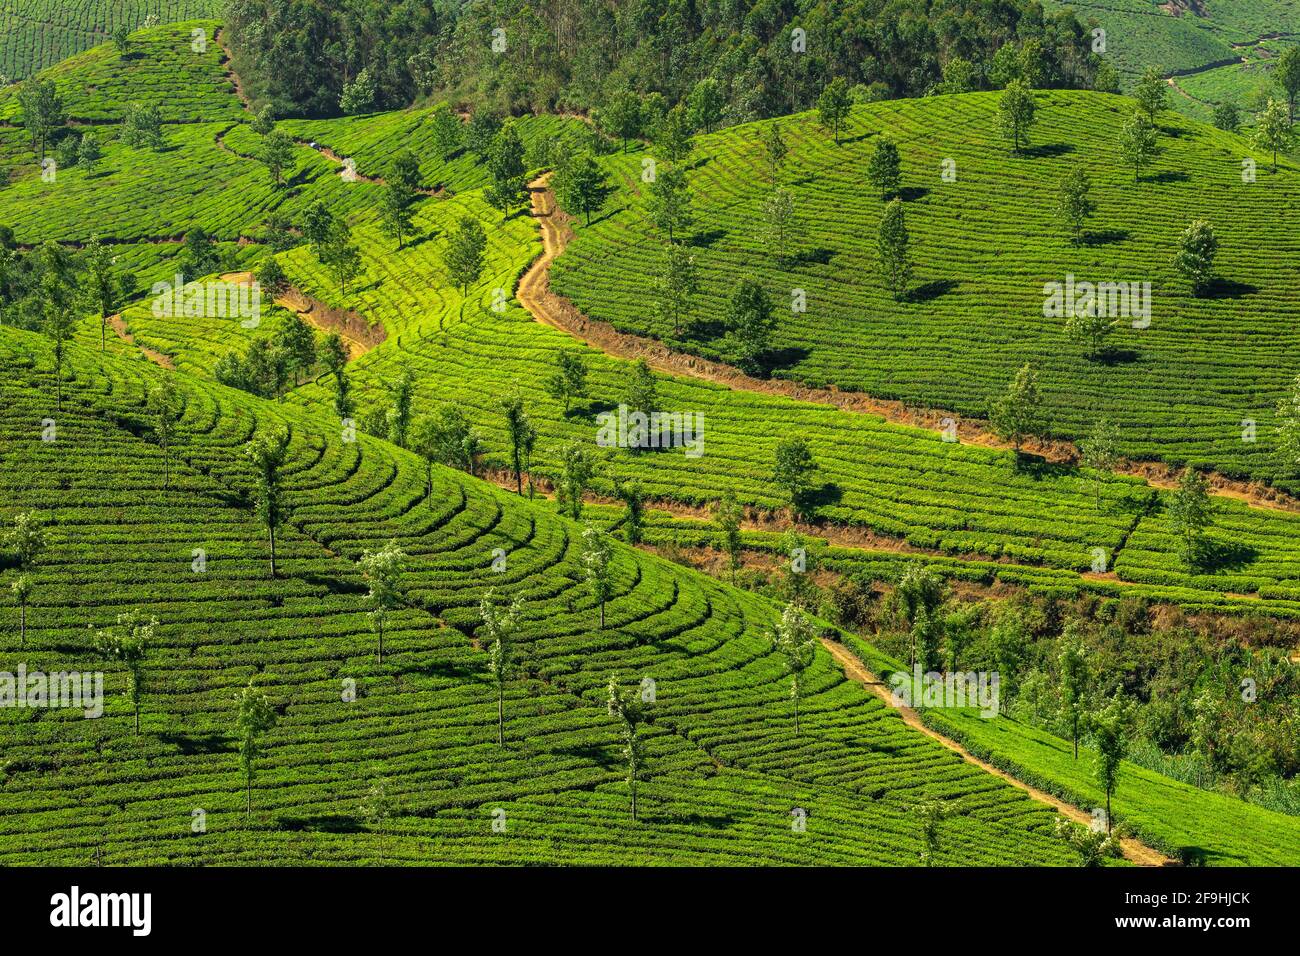 Beau paysage de plantations de thé vert frais à Munnar, Kerala, Inde Banque D'Images